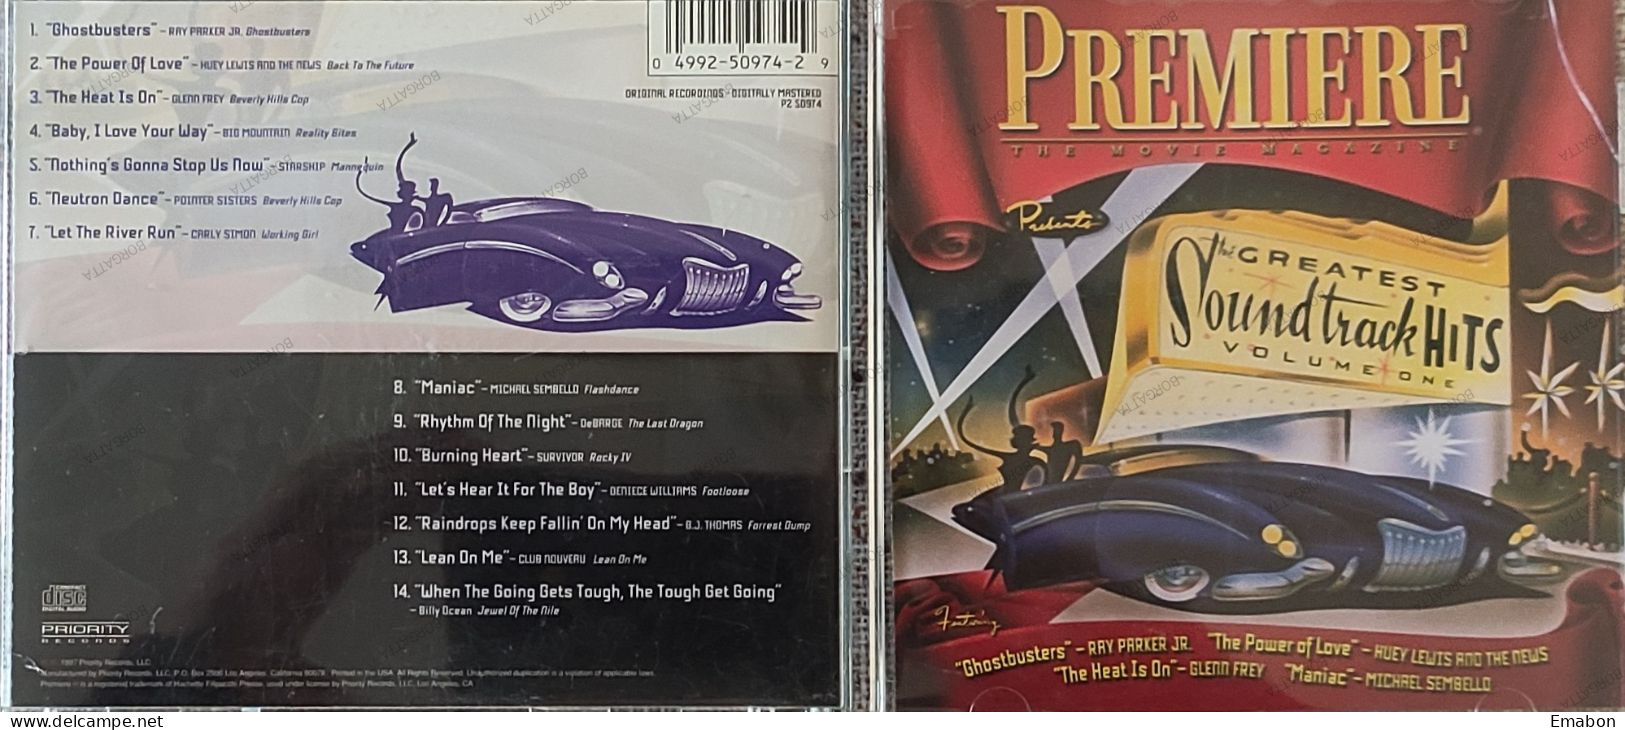 BORGATTA - FILM MUSIC - Cd PREMIERE - GREATEST SOUNDTRACK HITS VOLUME ONE - PRIORITY RECORDS 1997- USATO In Buono Stato - Musica Di Film